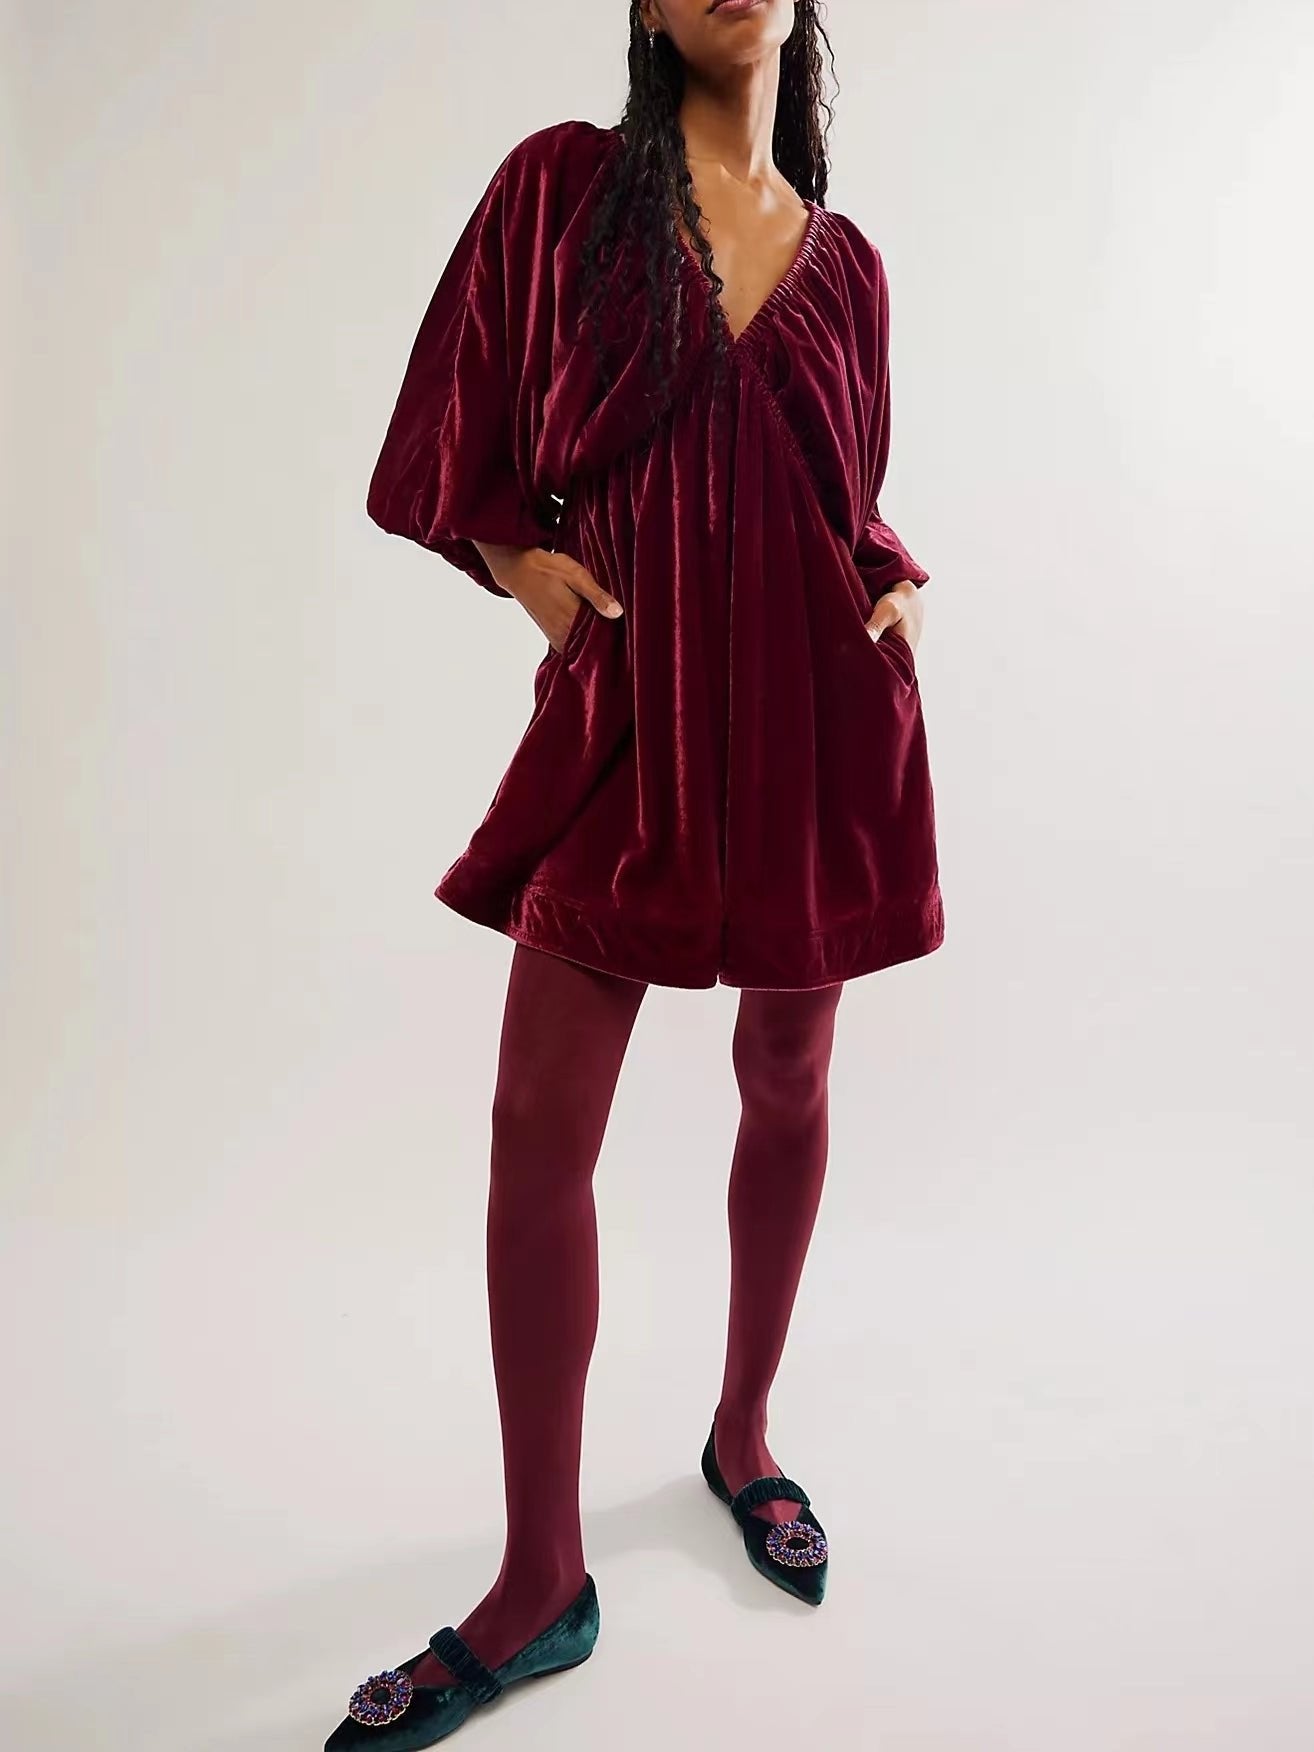 🎄🎁 Christmas Promotion 49% OFF - Portia Velvet Mini Dress